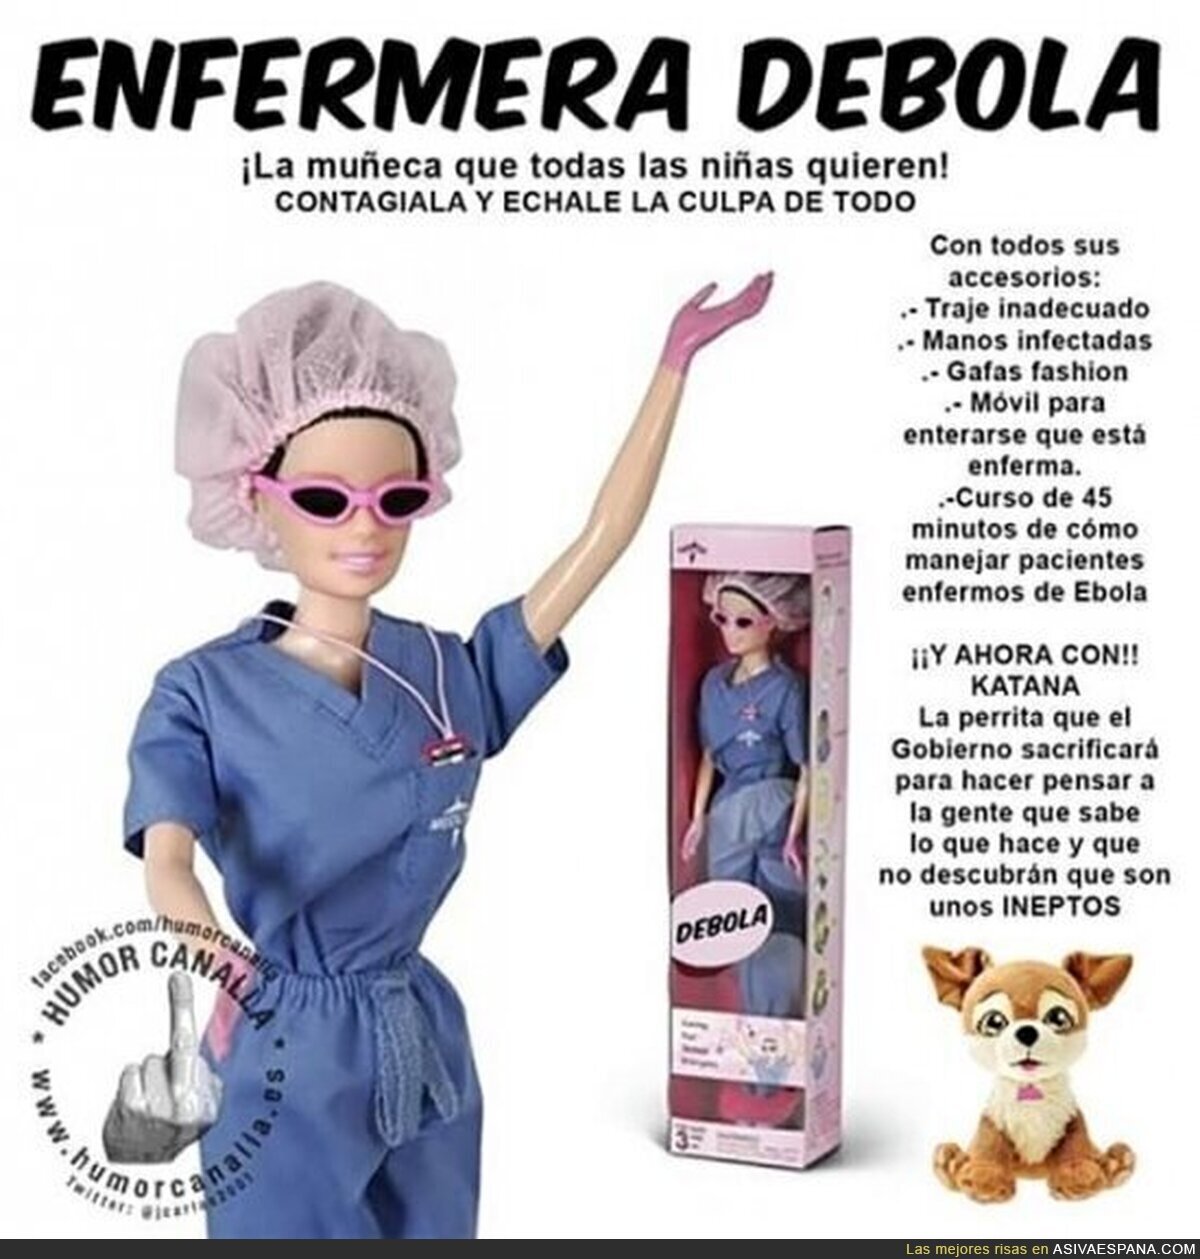 El juguete que más lo va a petar estas navidades, la enfermera Debola